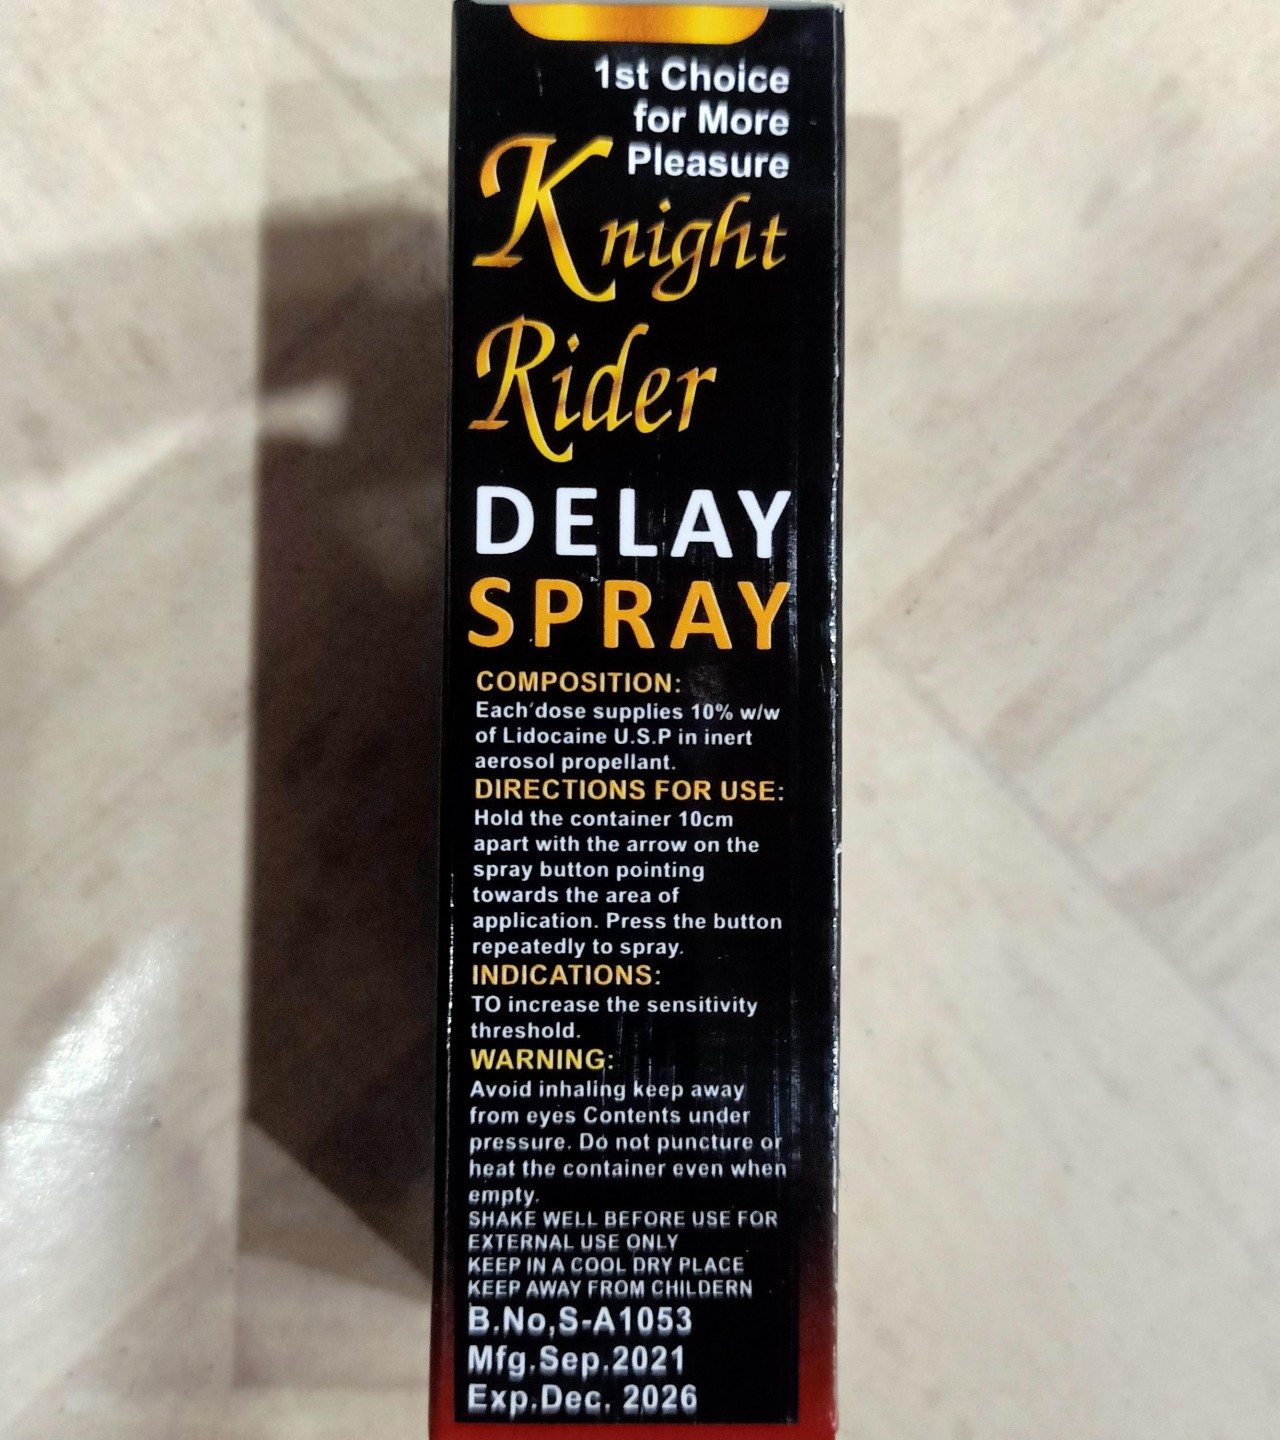 Knight Rider Delay Spray Maximum Long Duration